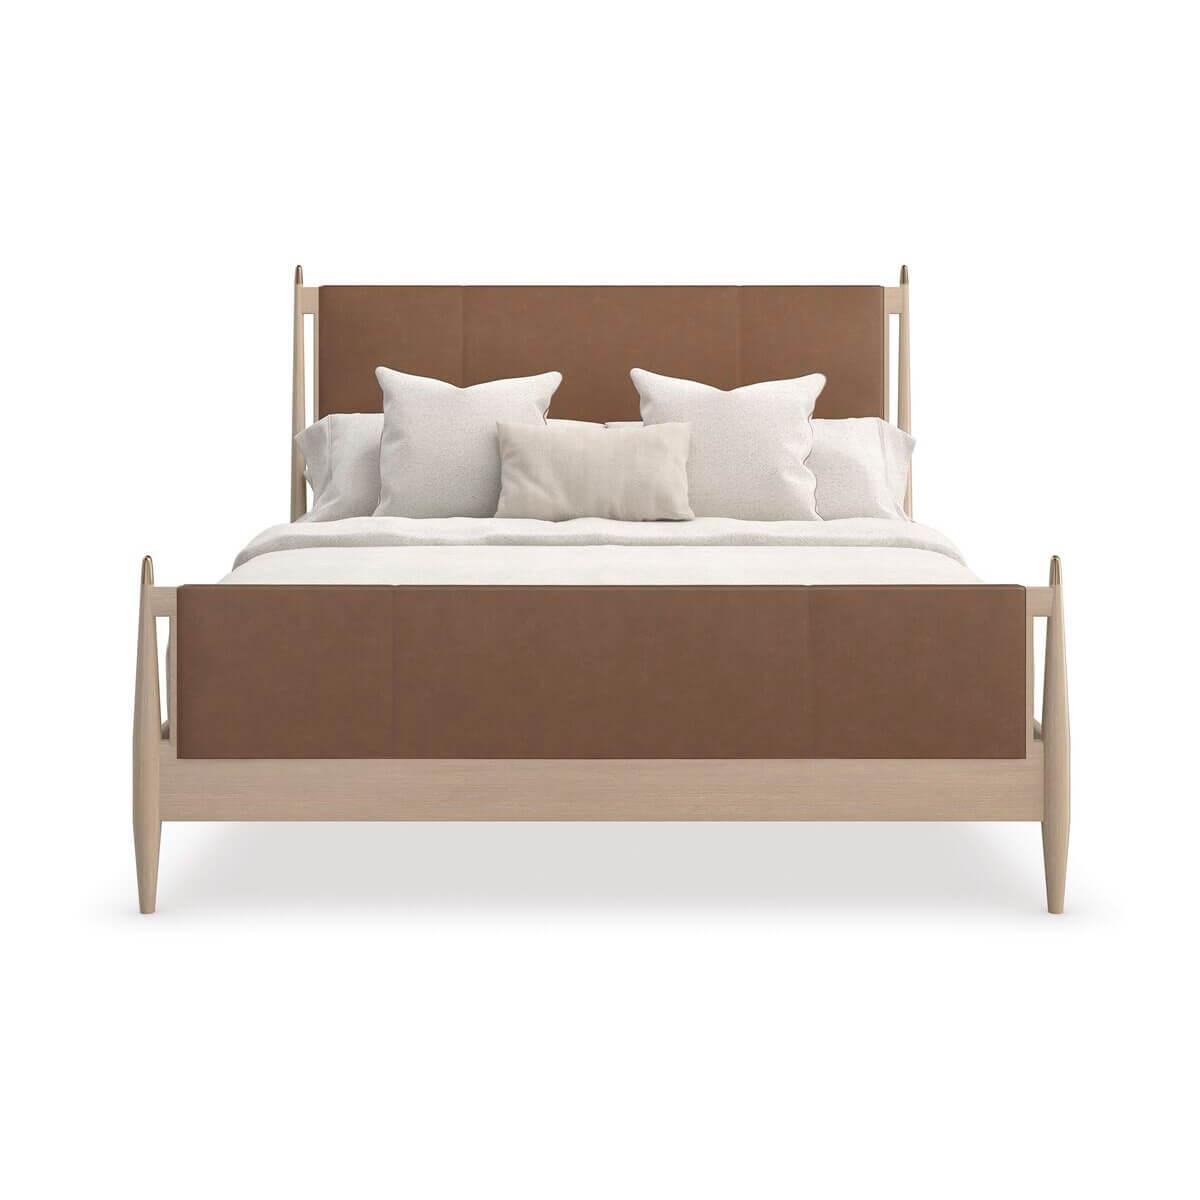 Mit seinen schlichten, modernen Linien und der reichhaltigen Verwendung von MATERIAL bringt das Bett einen einfachen, aber raffinierten Rhythmus in die Schlafzimmereinrichtung. Das schlichte Kopfteil im Parsons-Stil ist mit edlem, kamelfarbenem